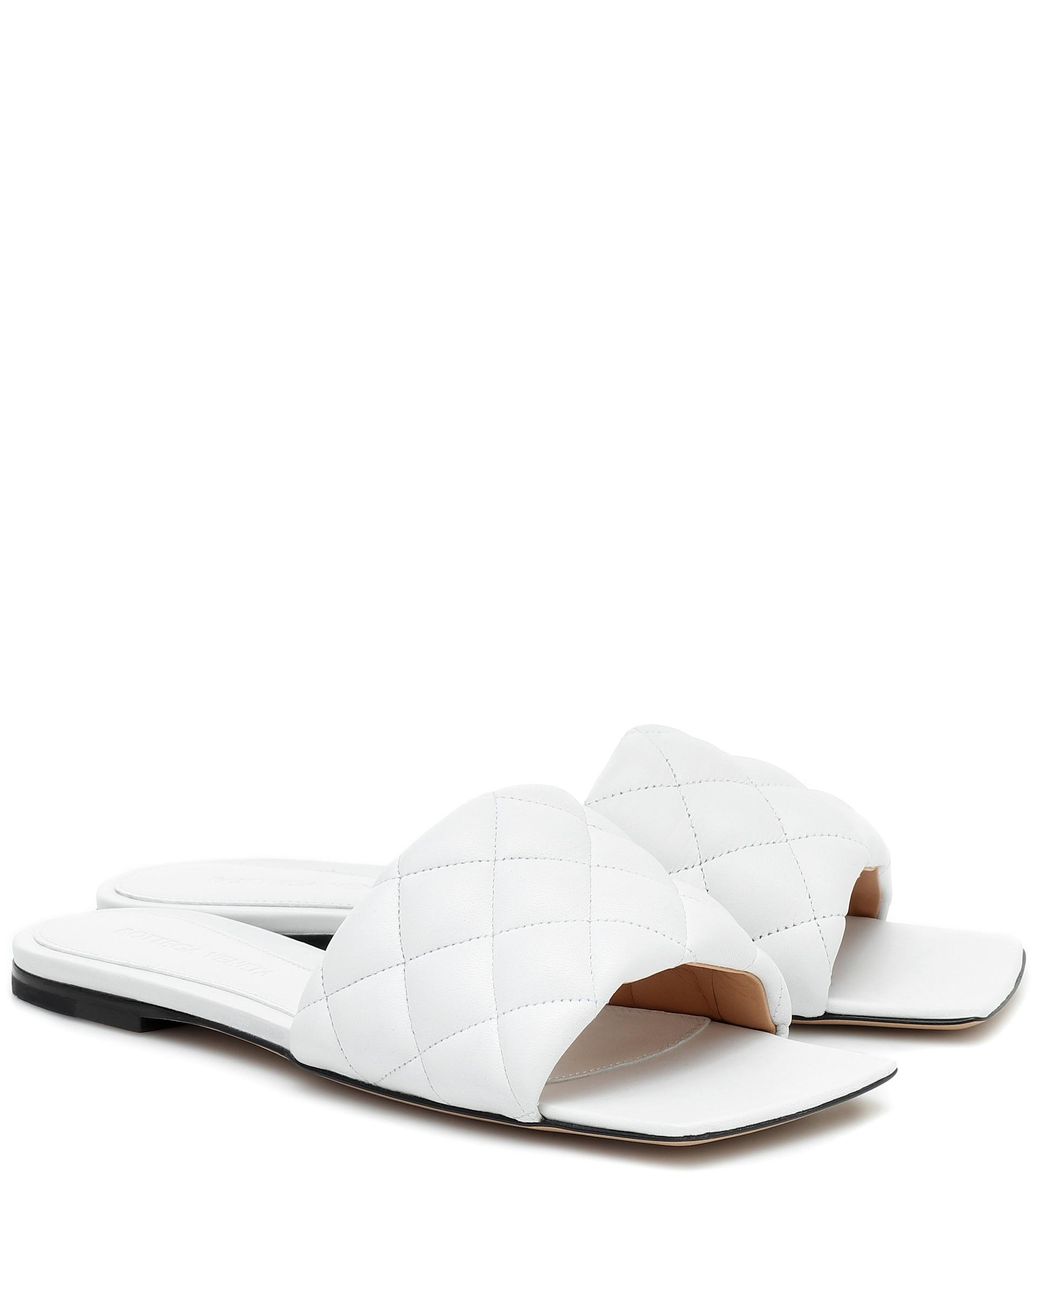 Bottega Veneta Padded Leather Sandals in White | Lyst